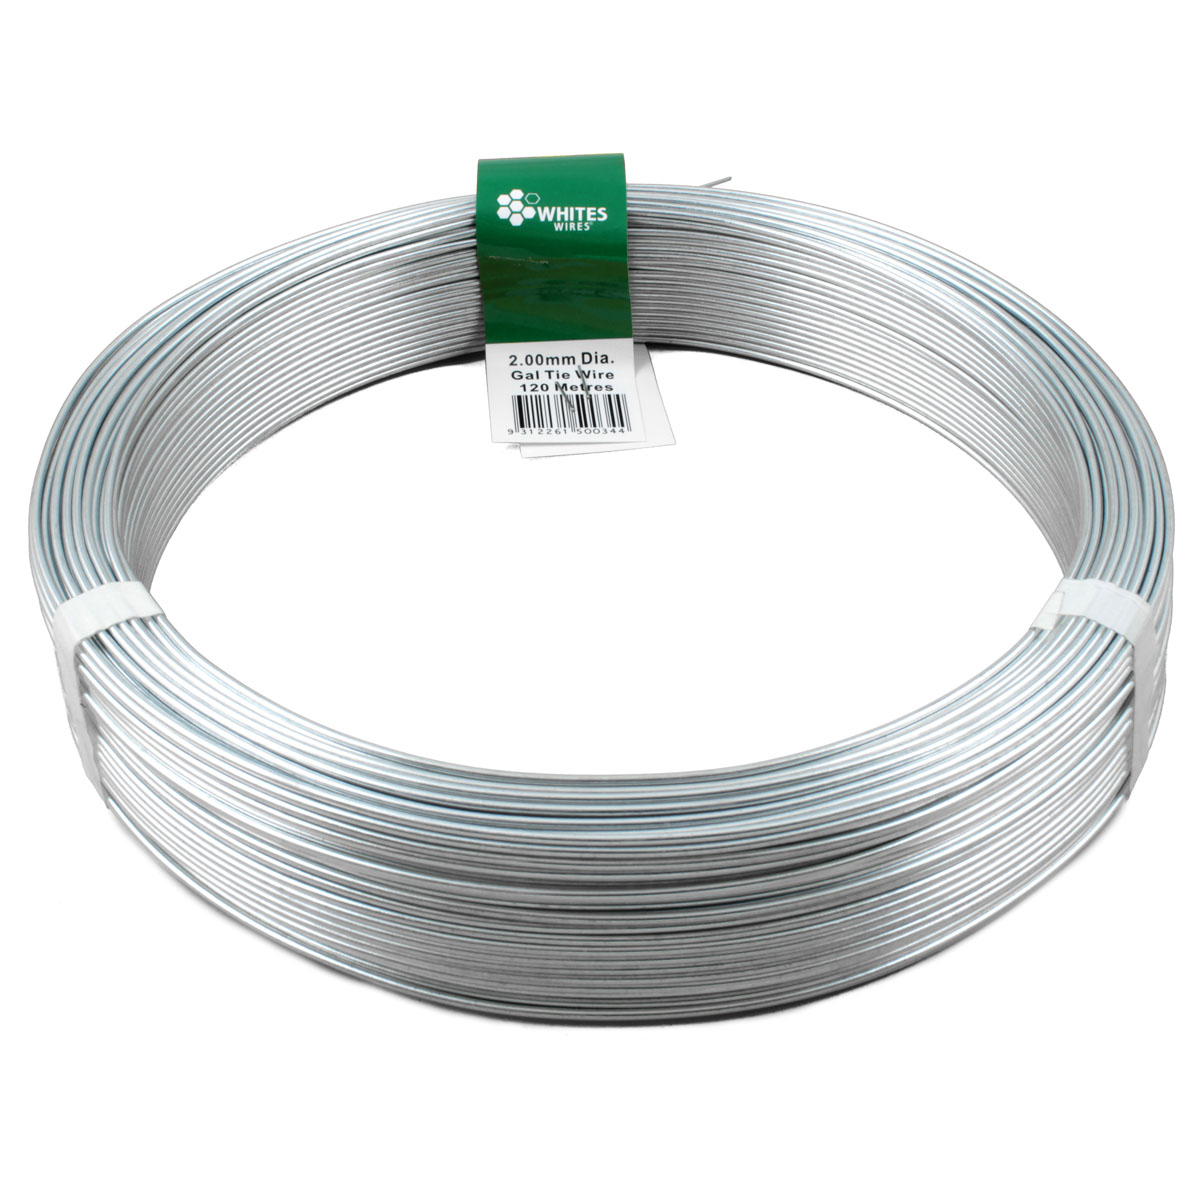 50034 tie wire gal 120m x 2.00mm